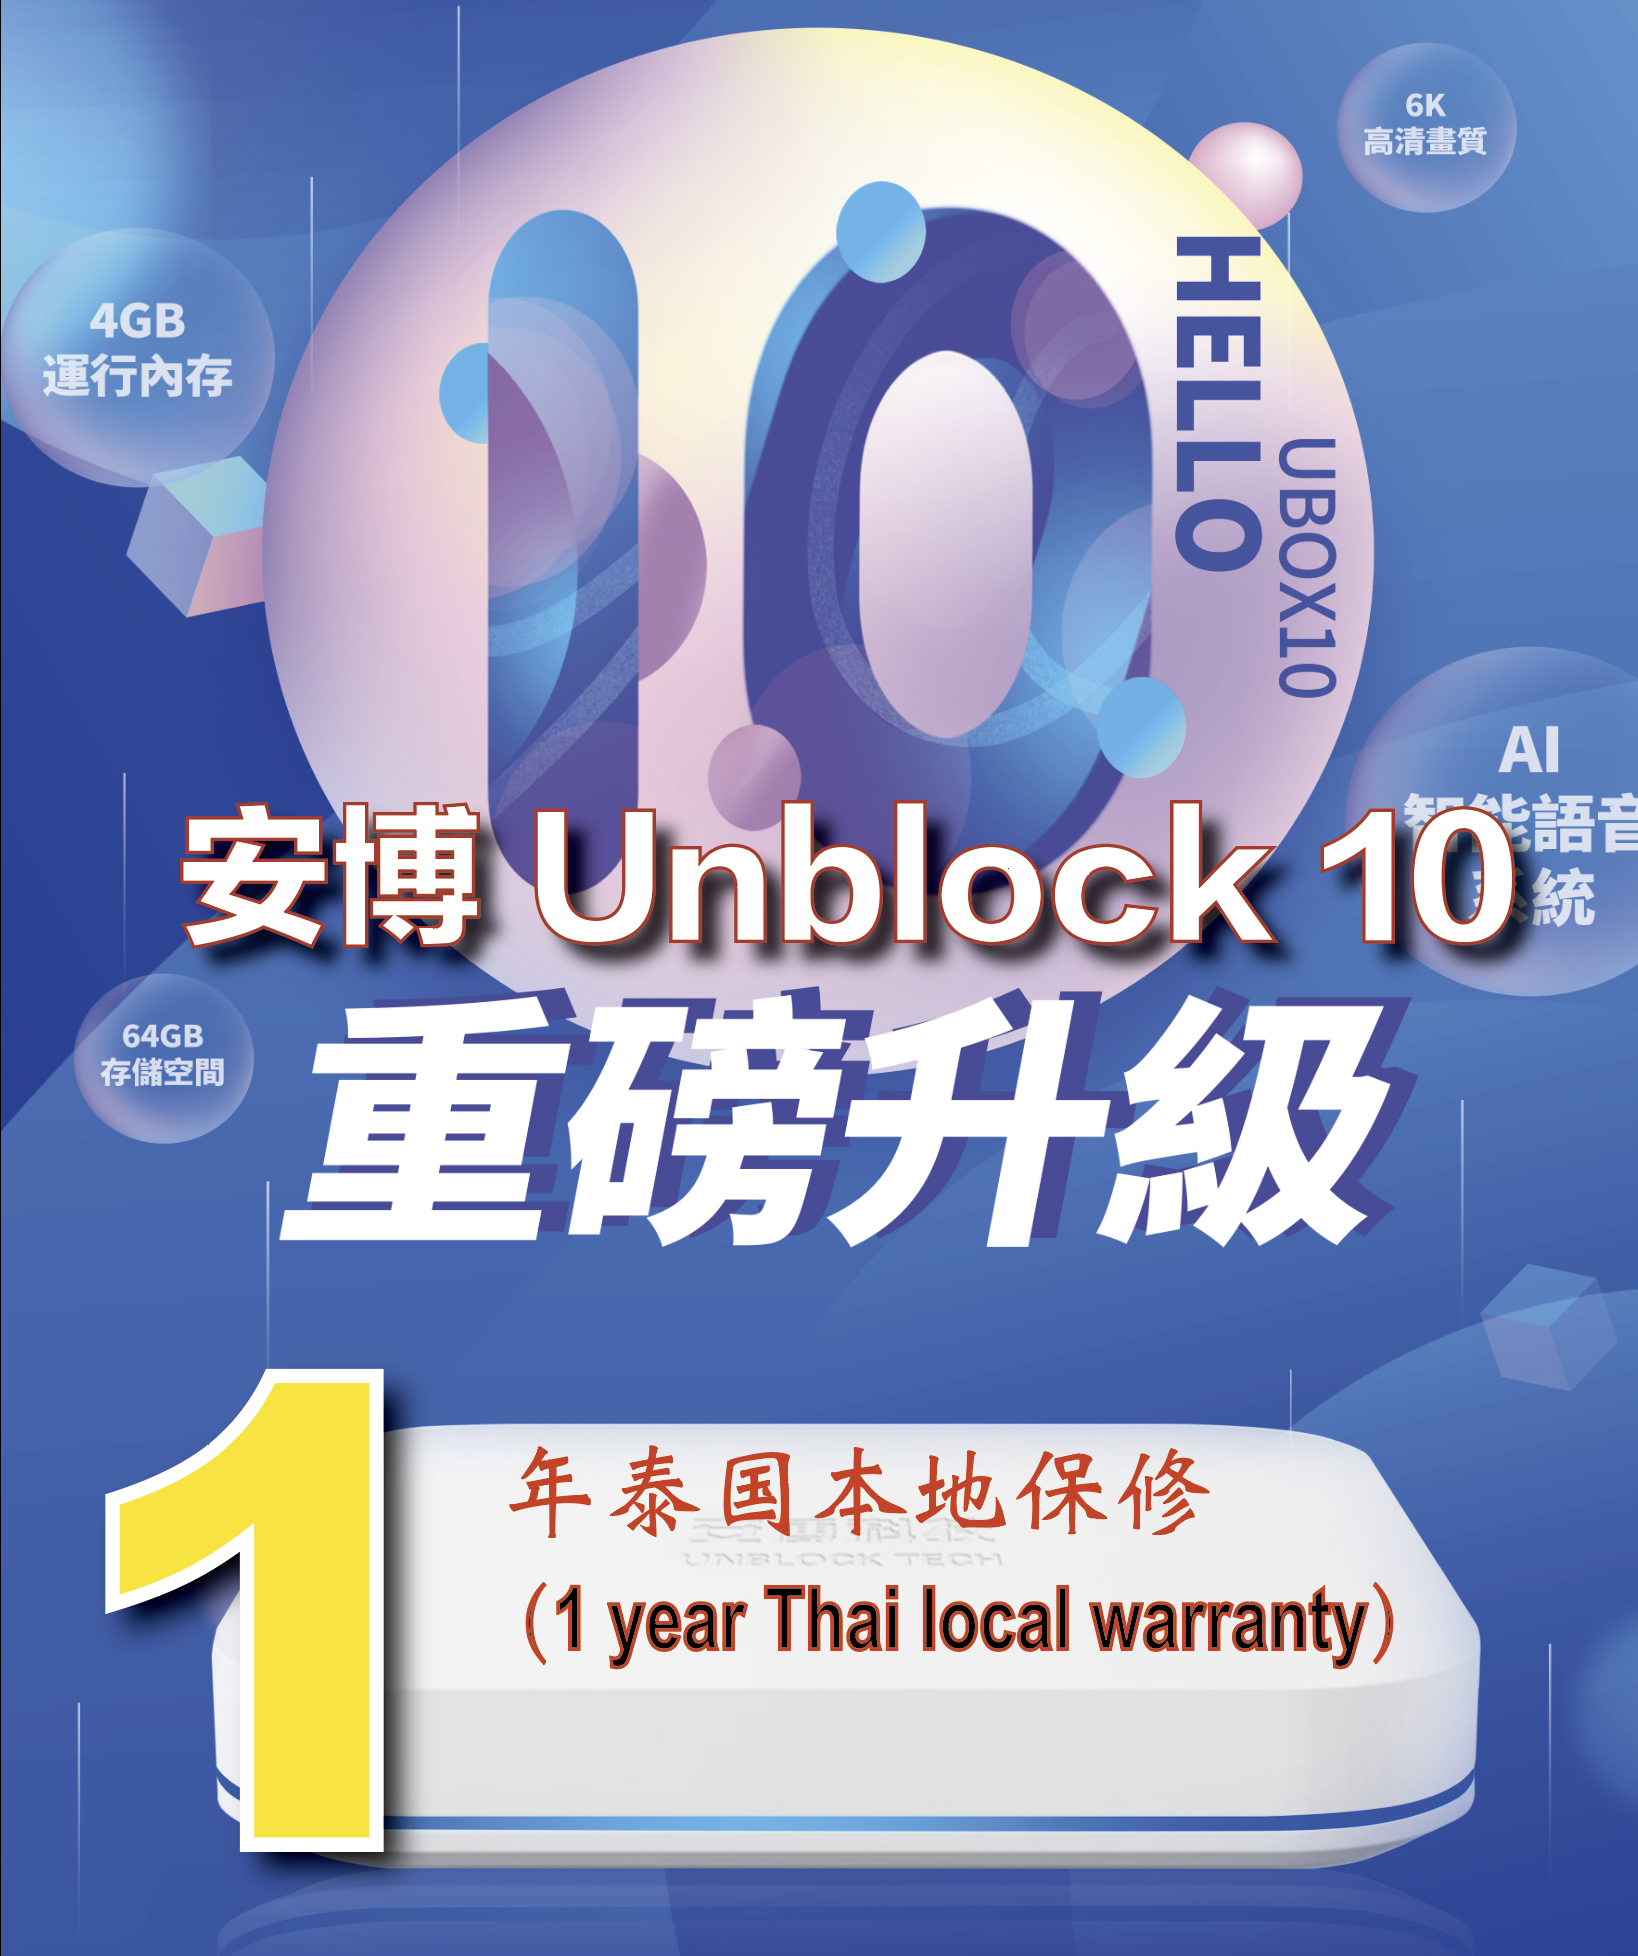 Unblock UBOX 10 Pro Max Tech Gen 10 4G 64G *安博盒子第十代 泰國